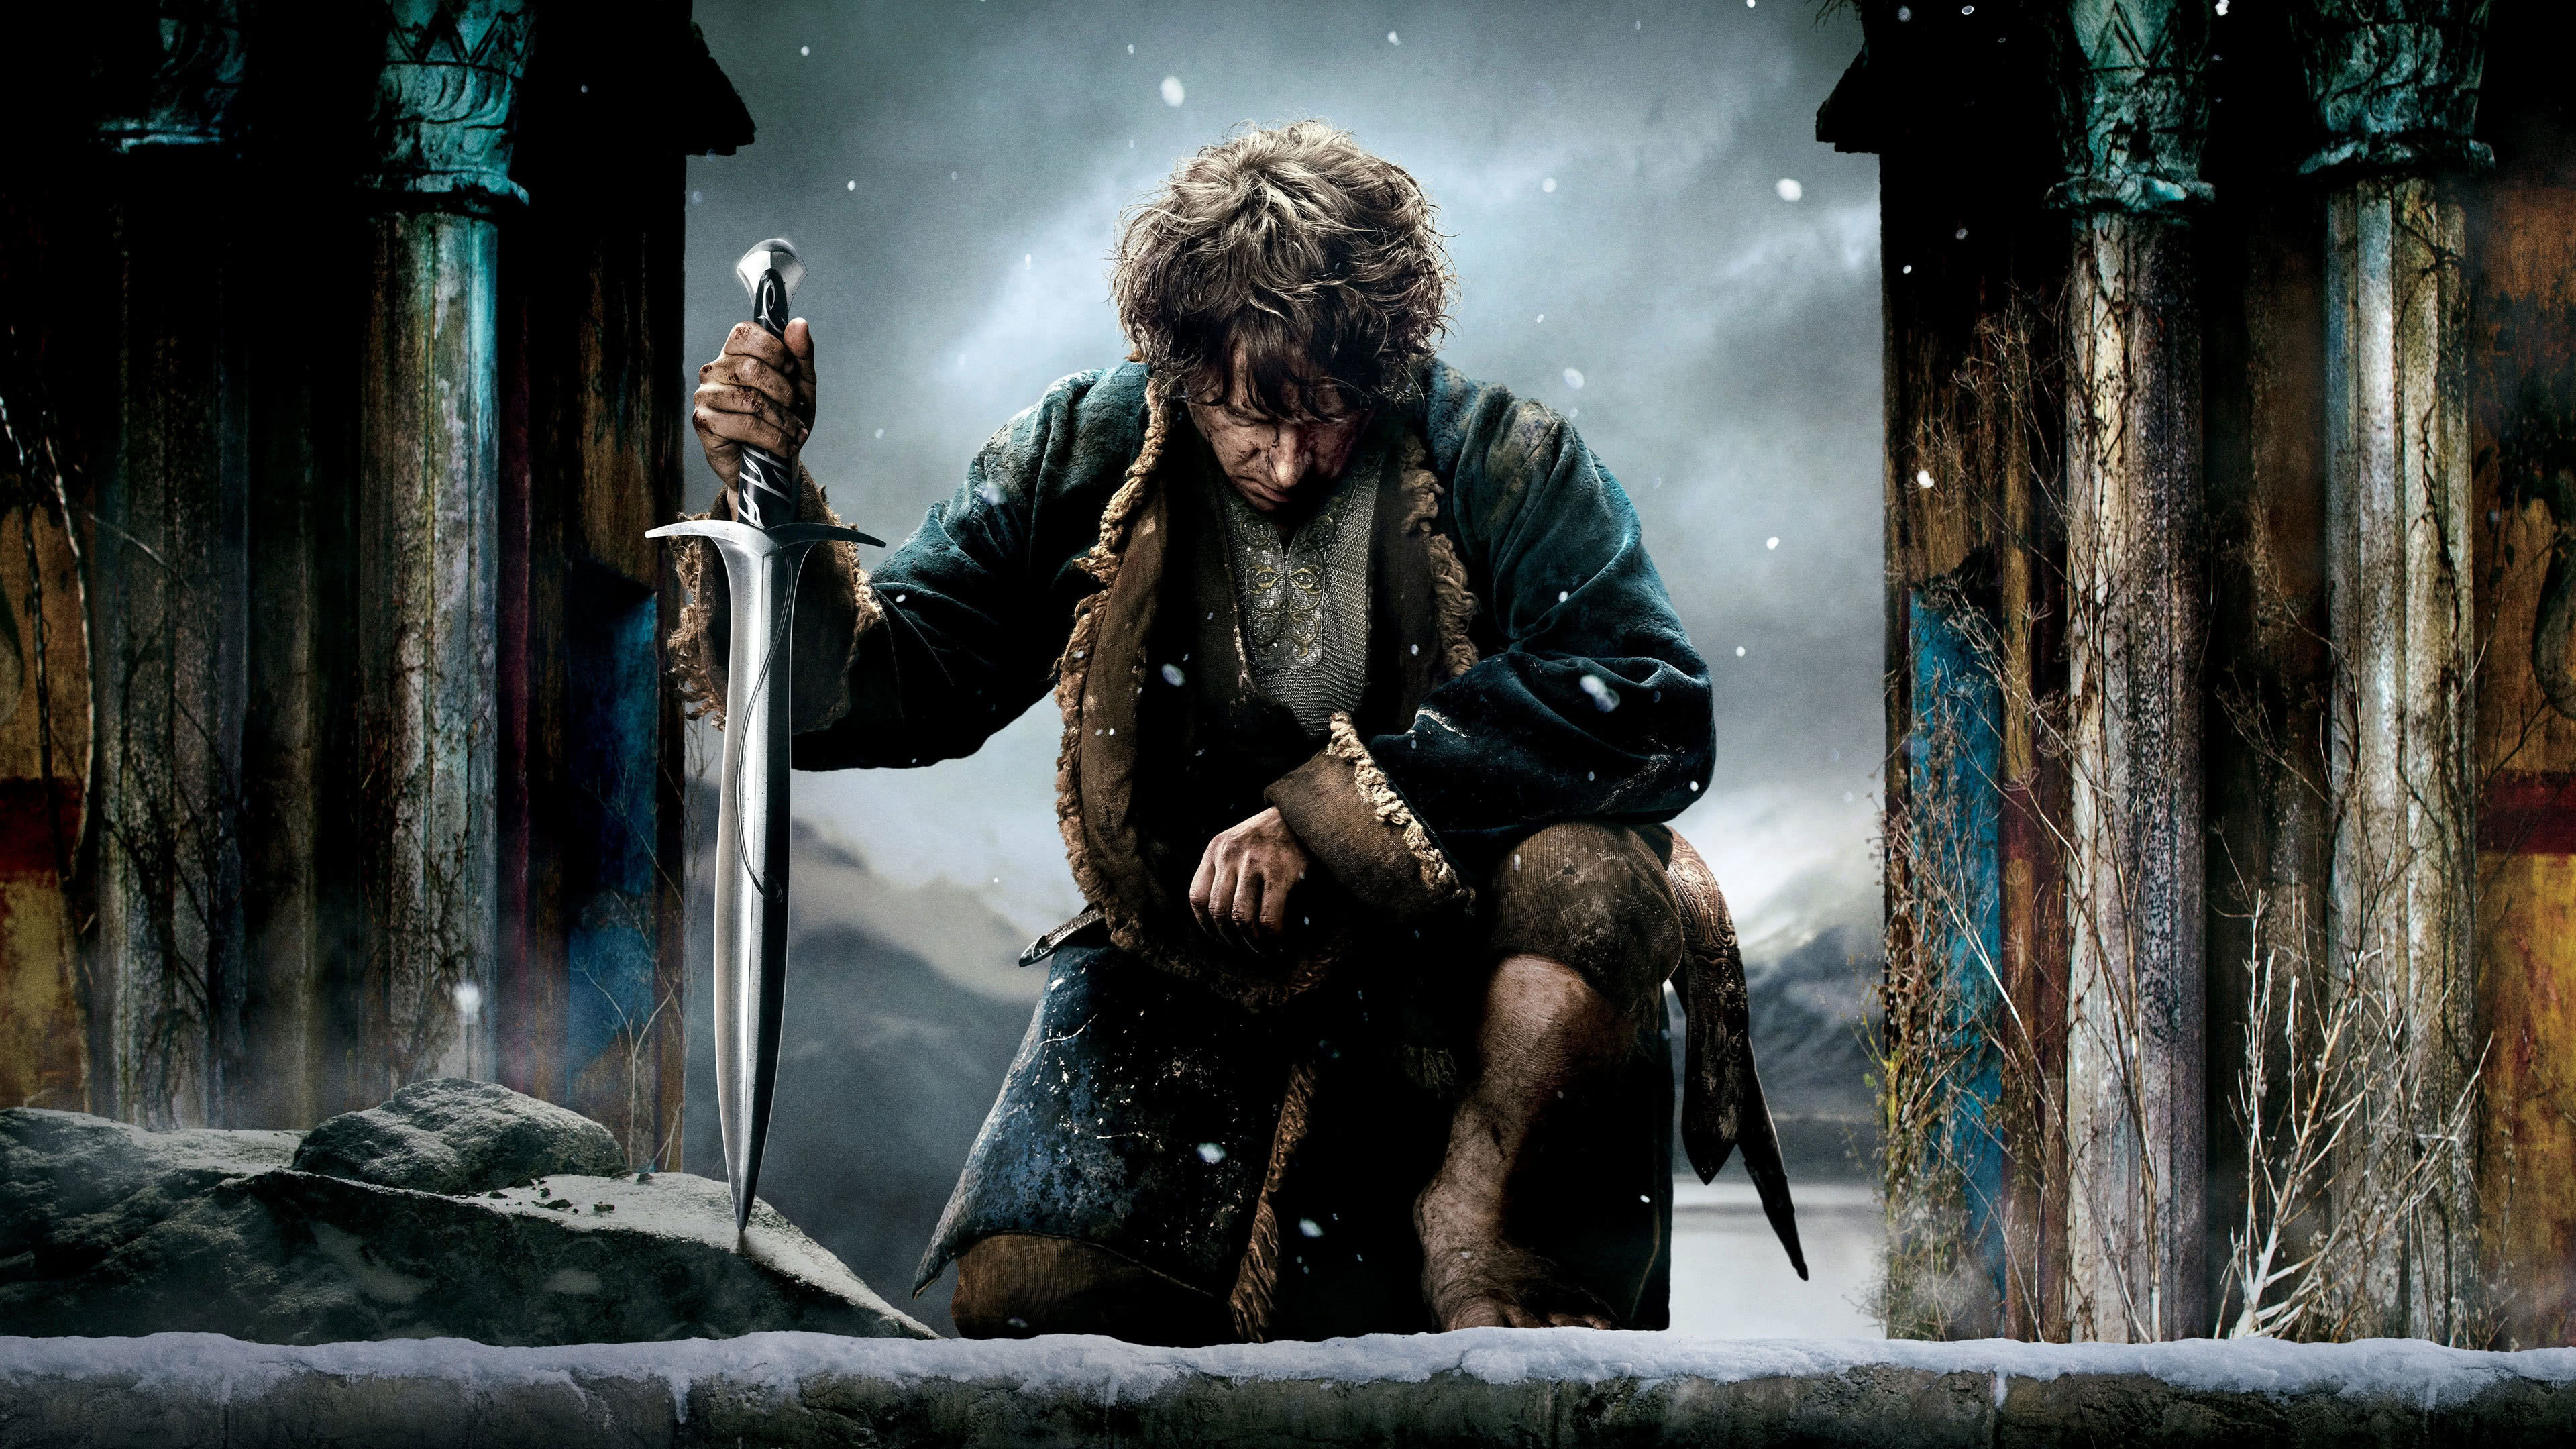 The Hobbit, Bilbo Baggins, UHD 4K Wallpaper, Unexpected journey, 3840x2160 4K Desktop